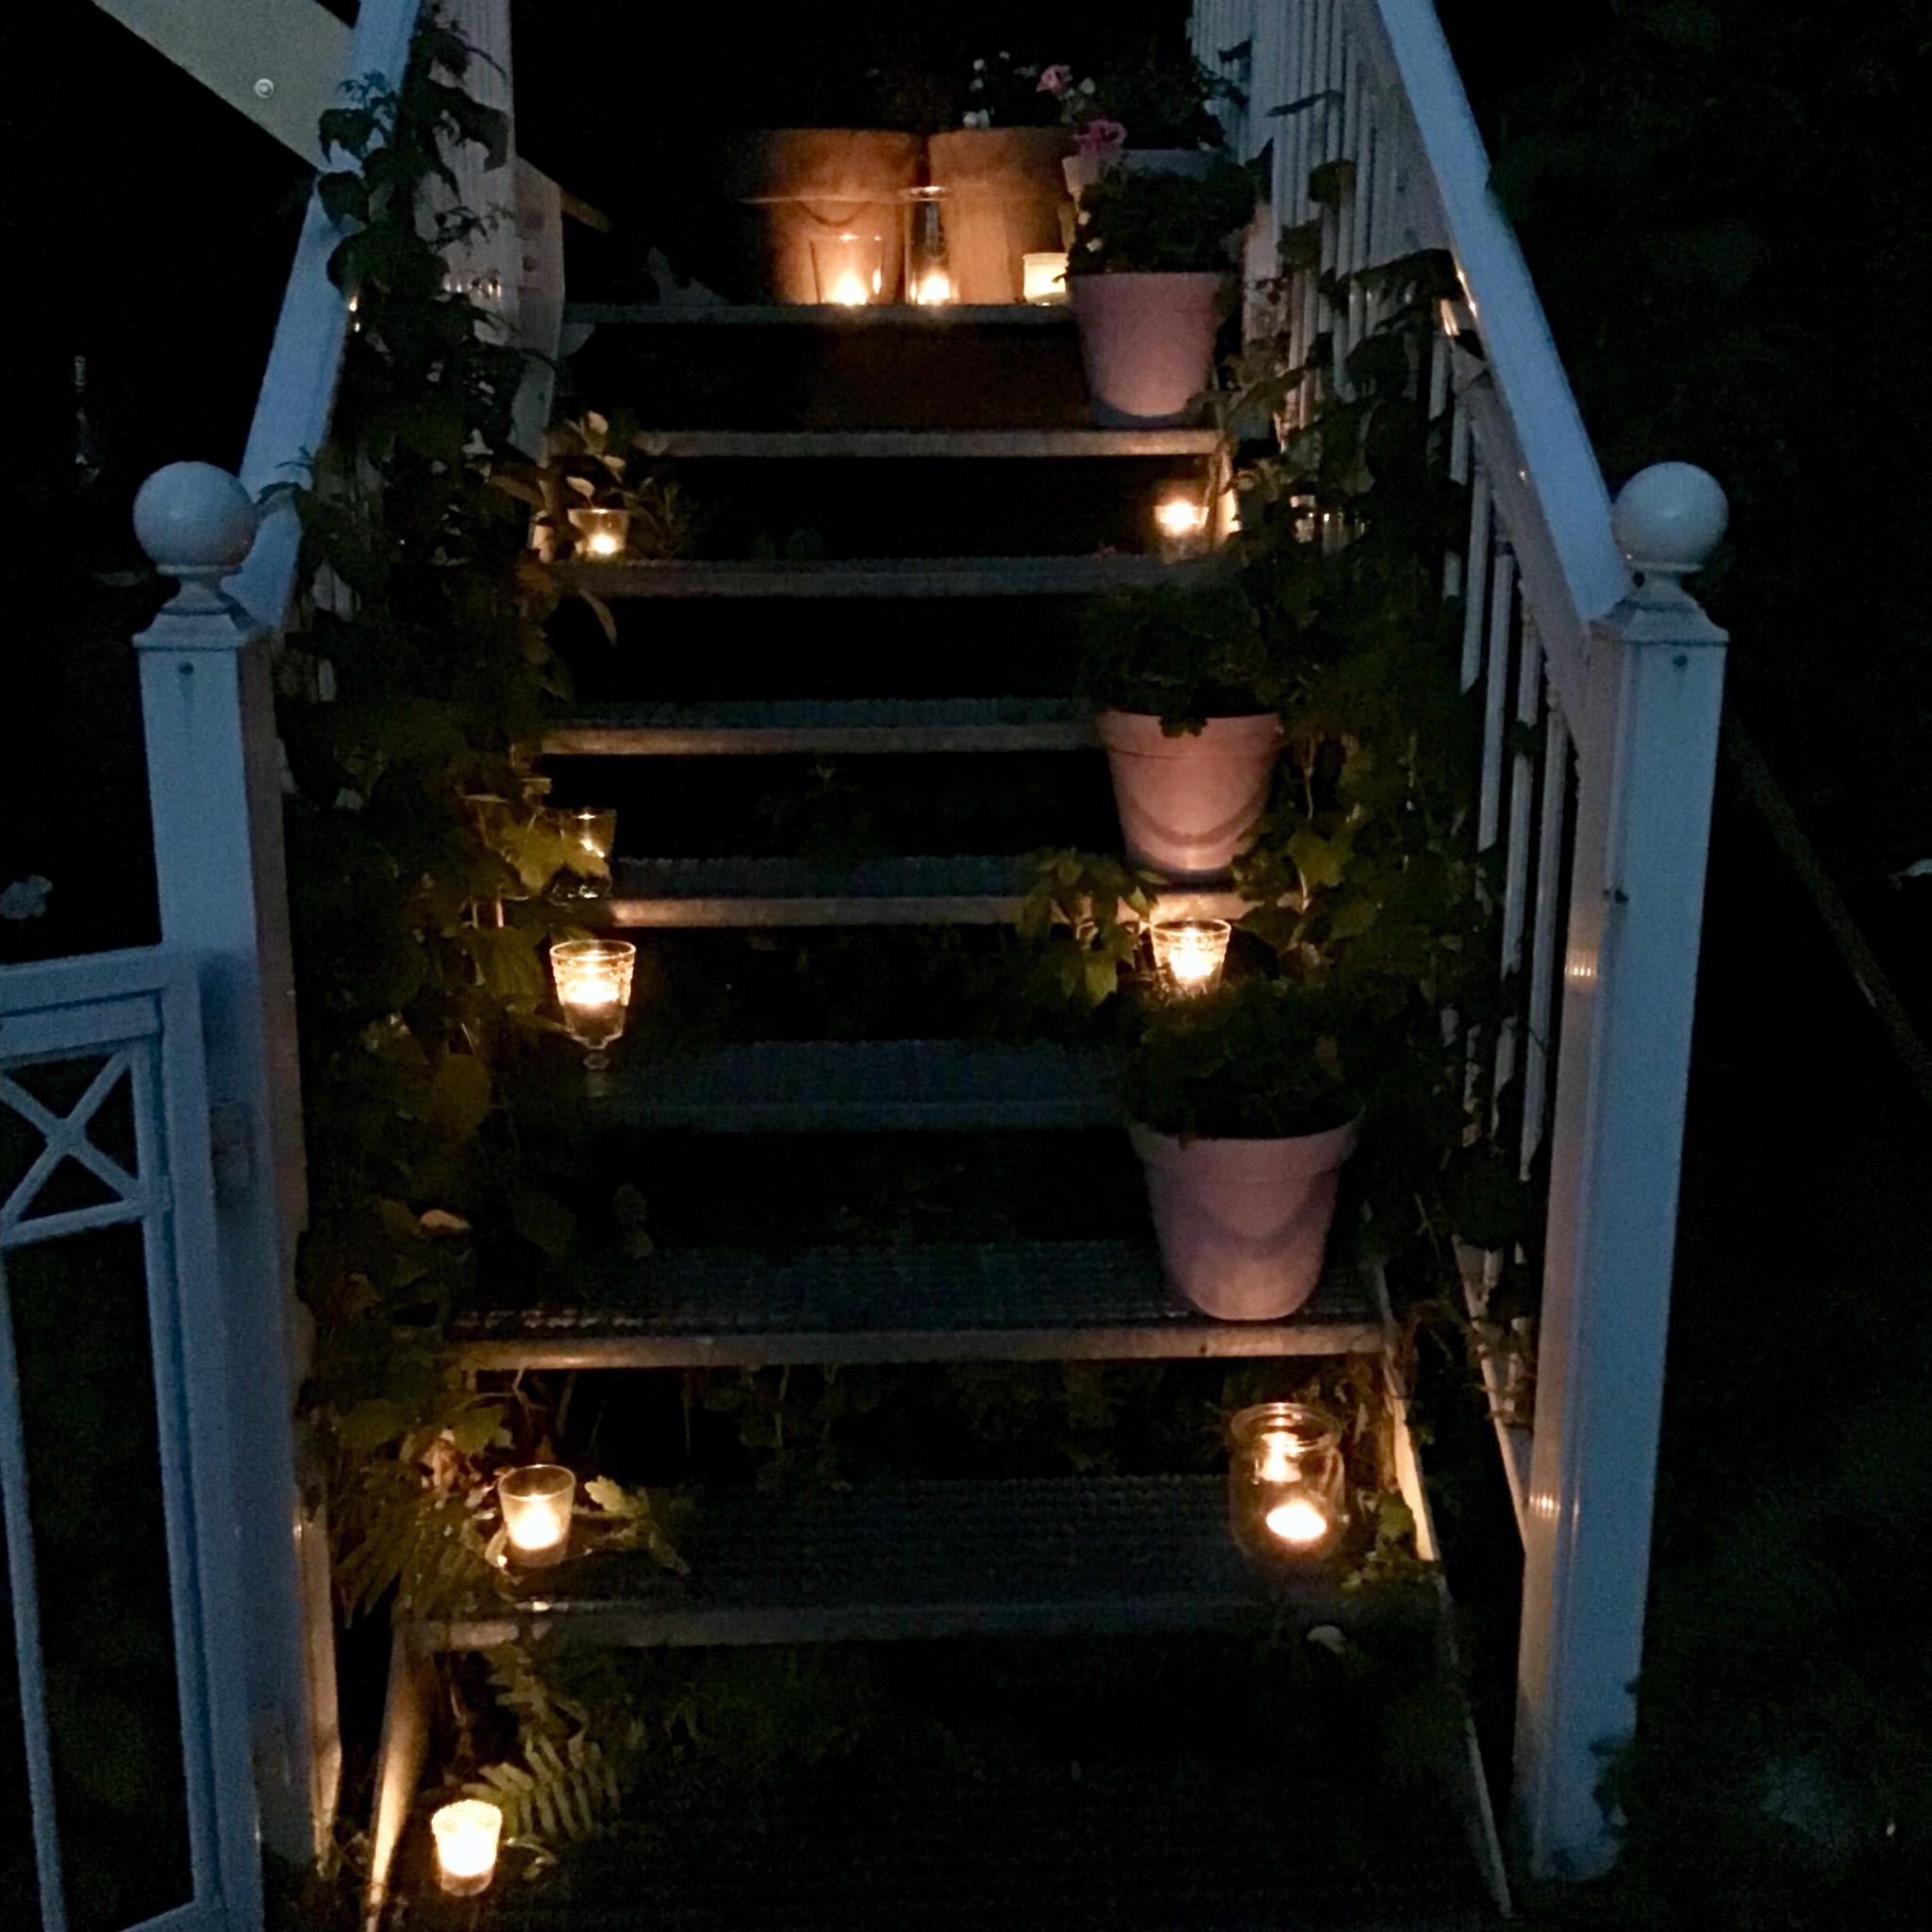 Diese wunderbaren Sommerabende #balkonidee #deko #garten #sommer #dekoration #home #hygge #romantik